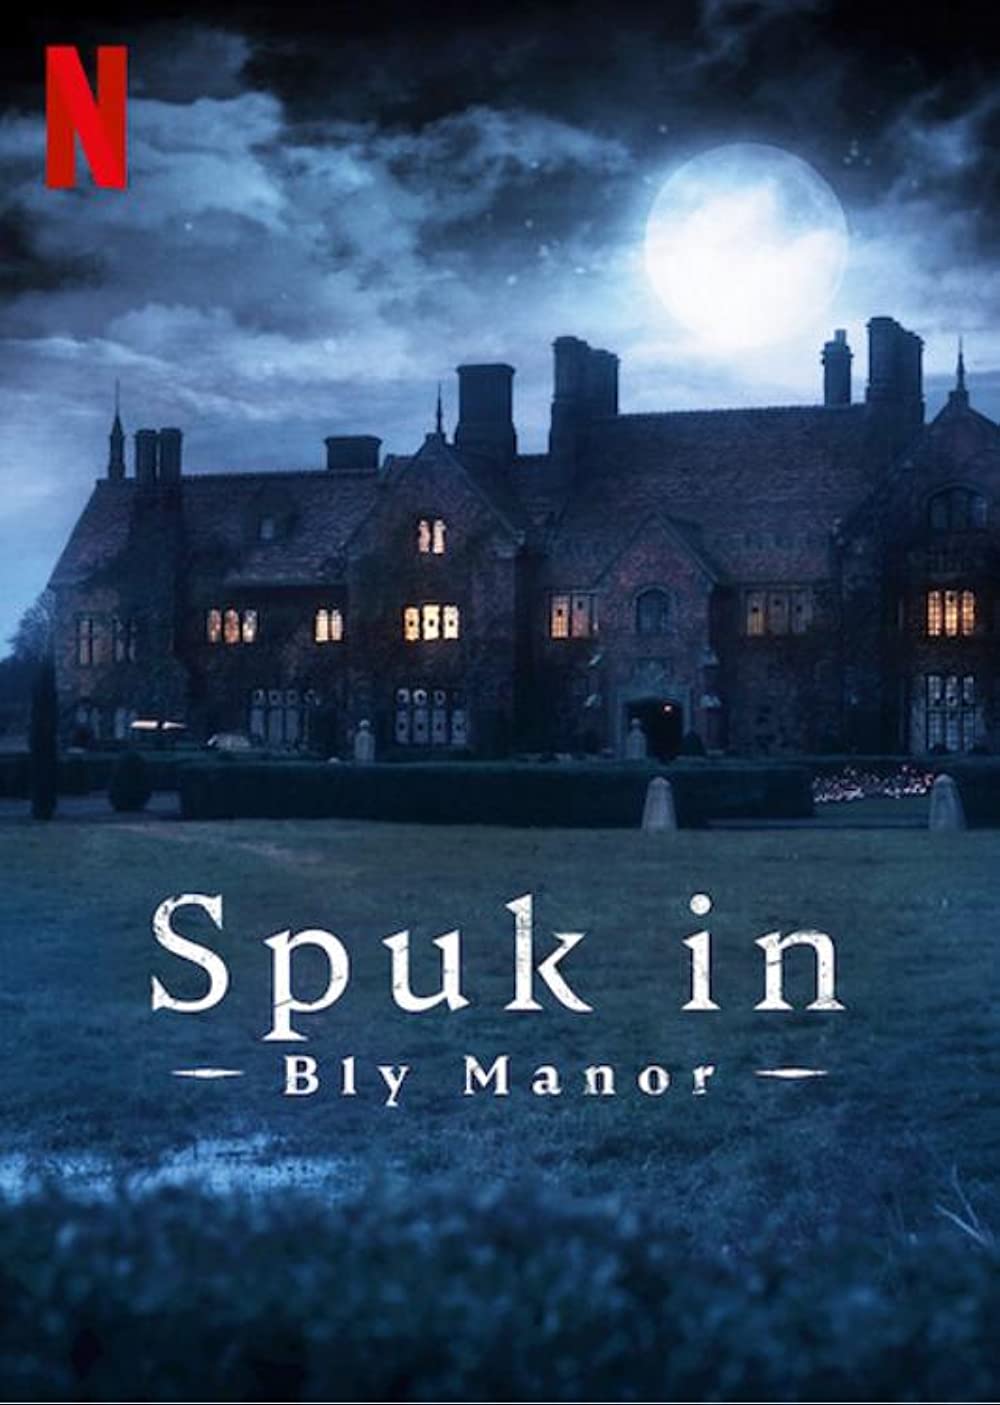 Filmbeschreibung zu Spuk in Bly Manor